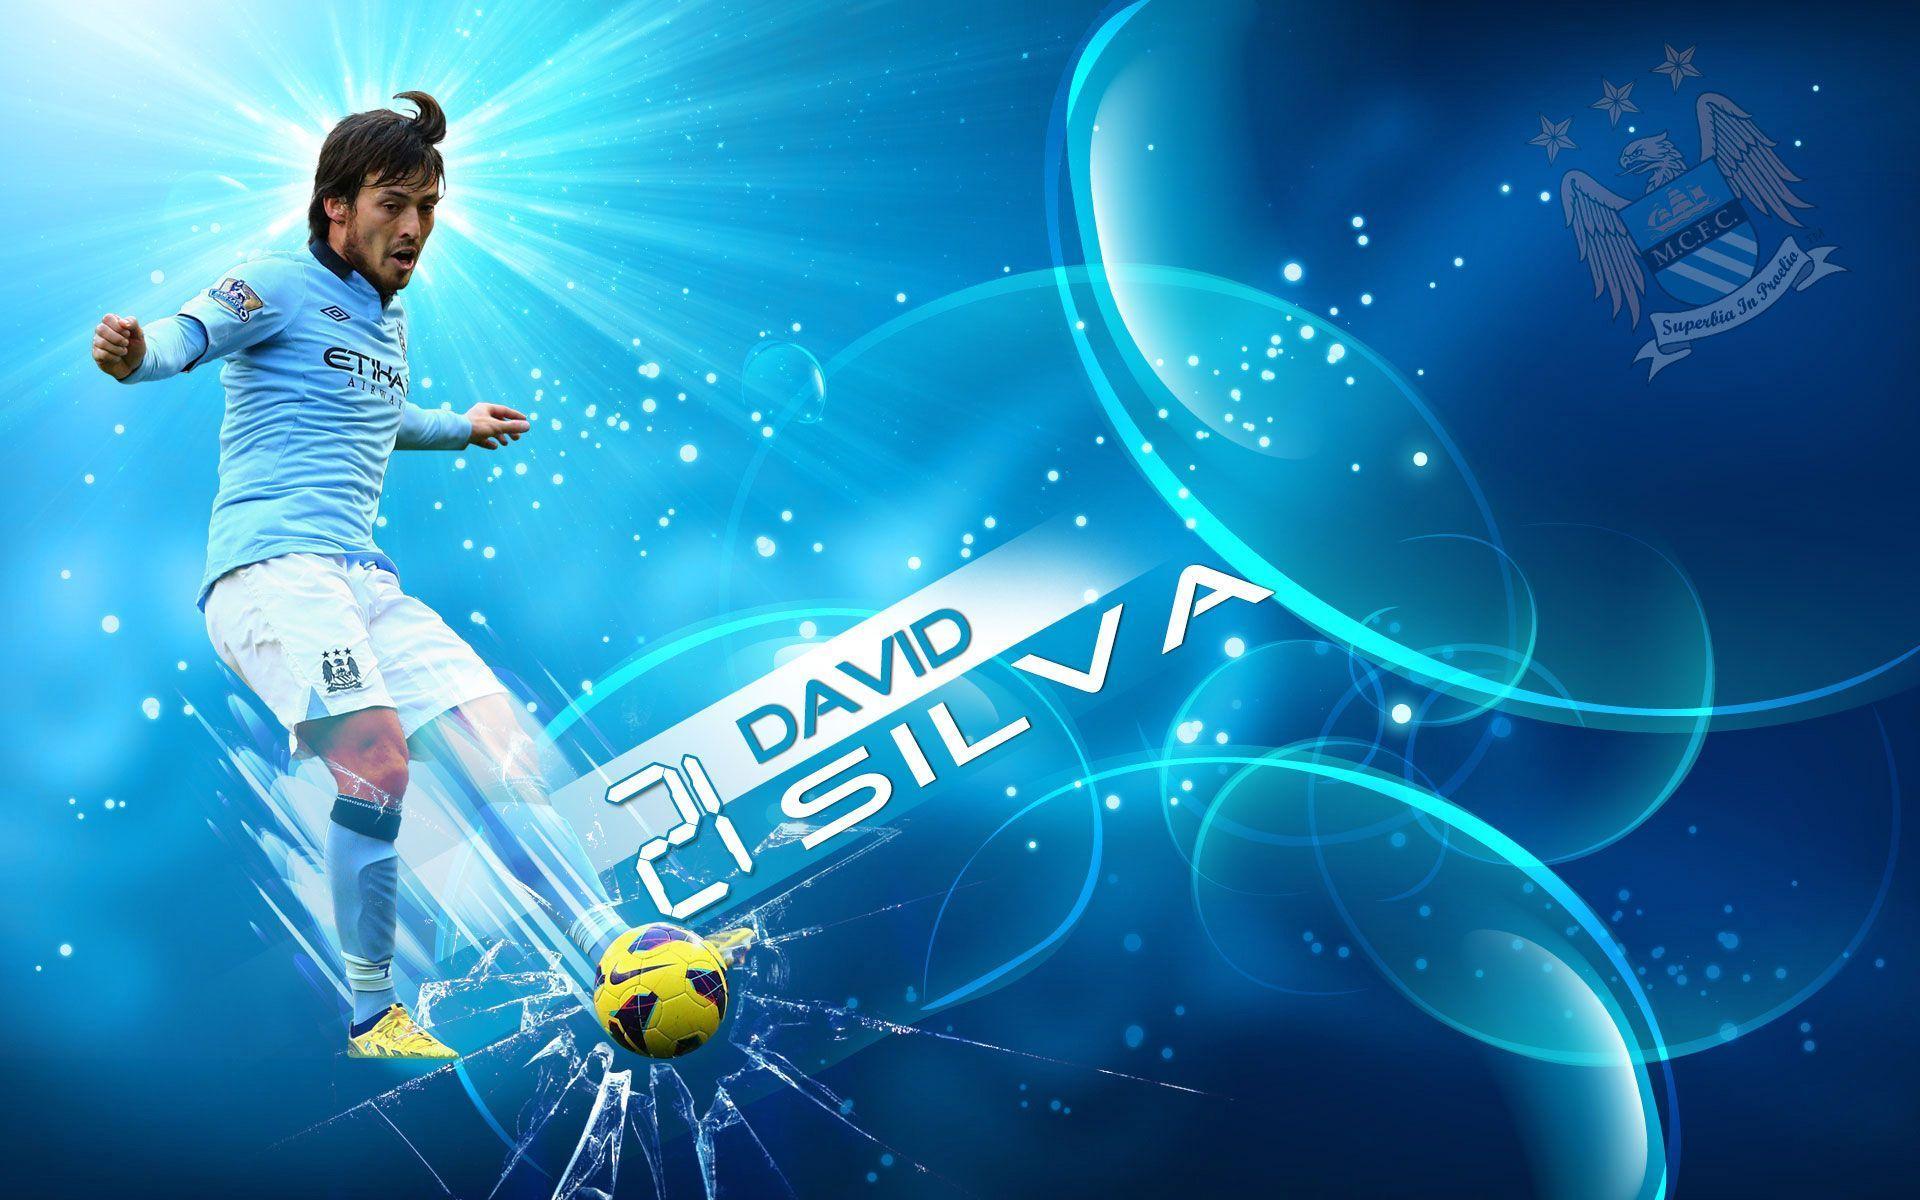 David Silva Manchester City 2014 Wallpaper Wide or HD. Male